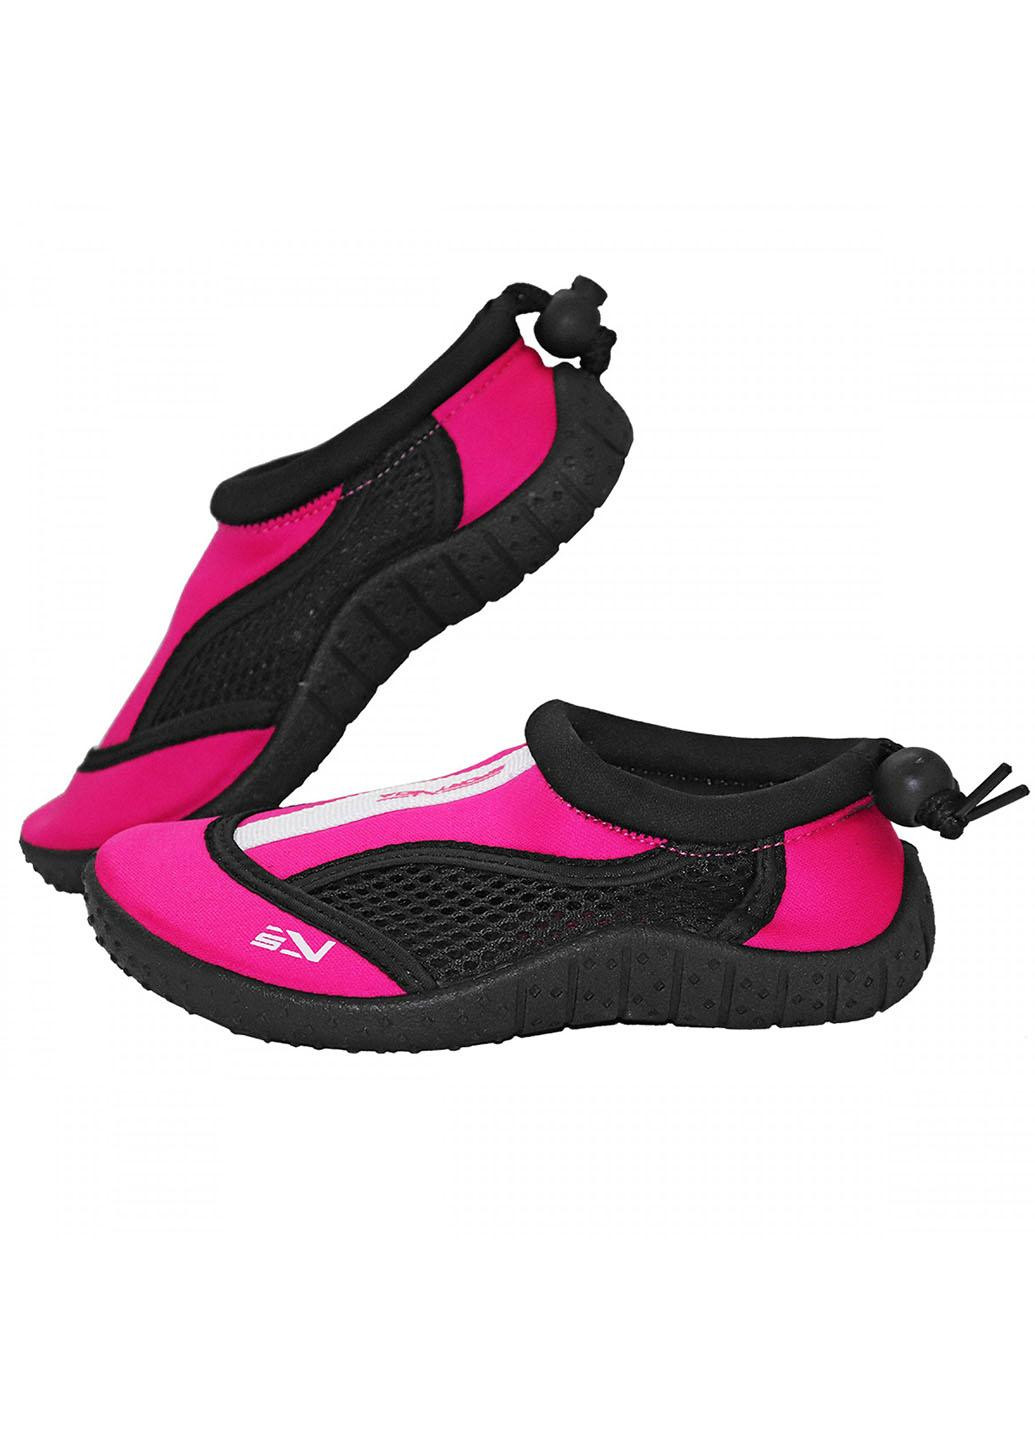 Обувь для пляжа и кораллов (аквашуз) SV-GY0001-R32 Size 32 Black/Pink SportVida (258486780)